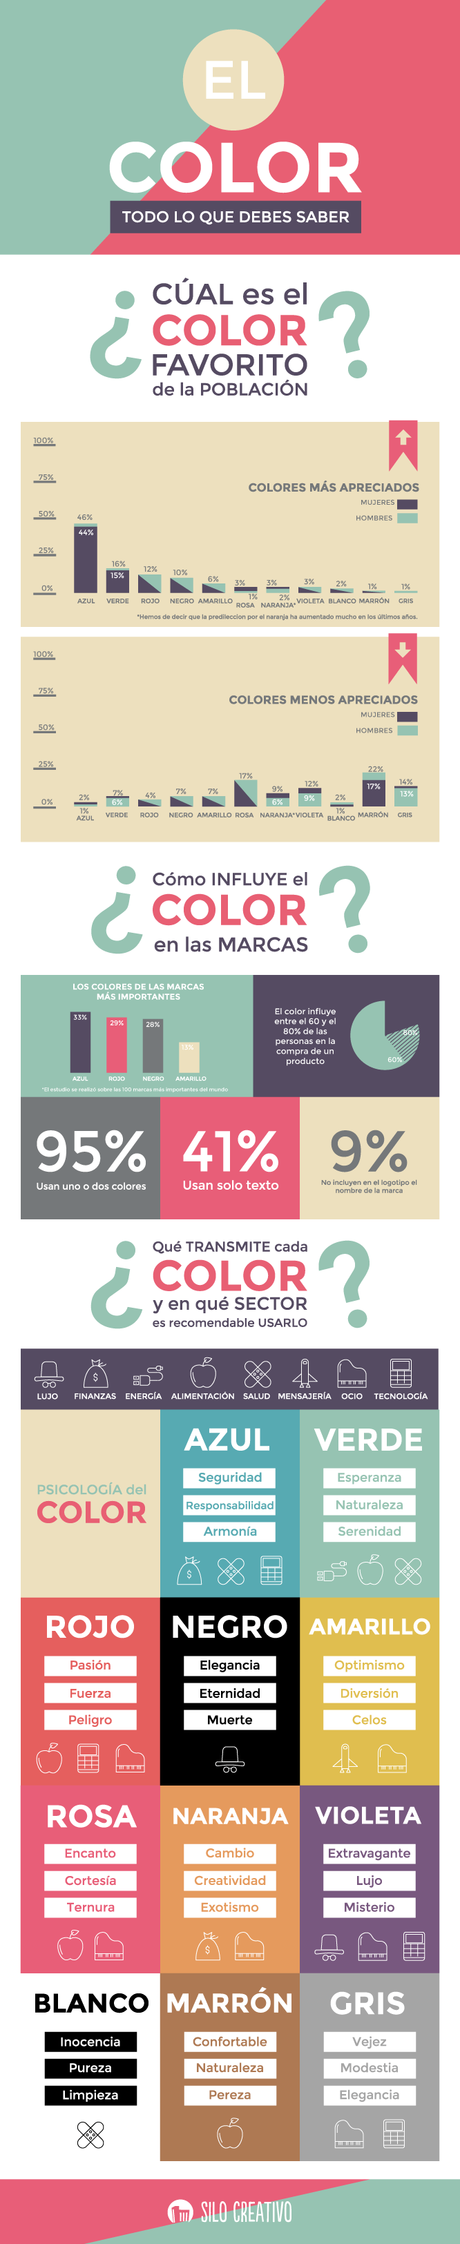 Colores más usados y favoritos: Infografía